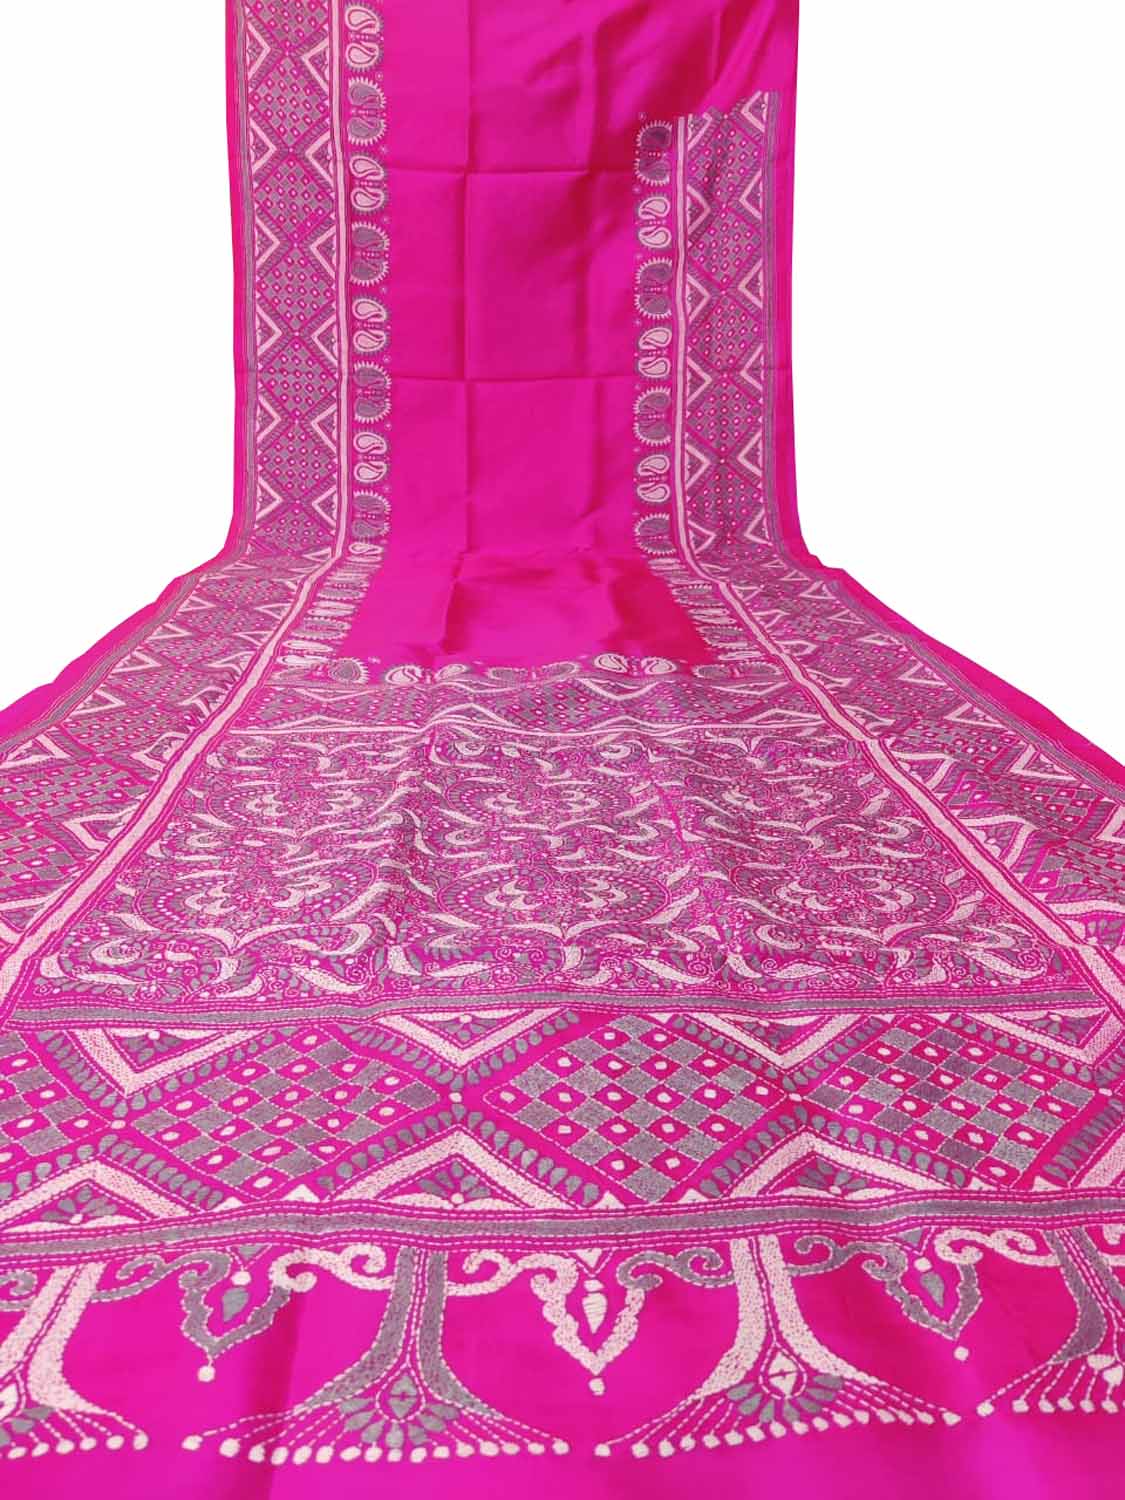 Exquisite Pink Kantha Work Bangalore Silk Saree: Hand Embroidered Elegance - Luxurion World